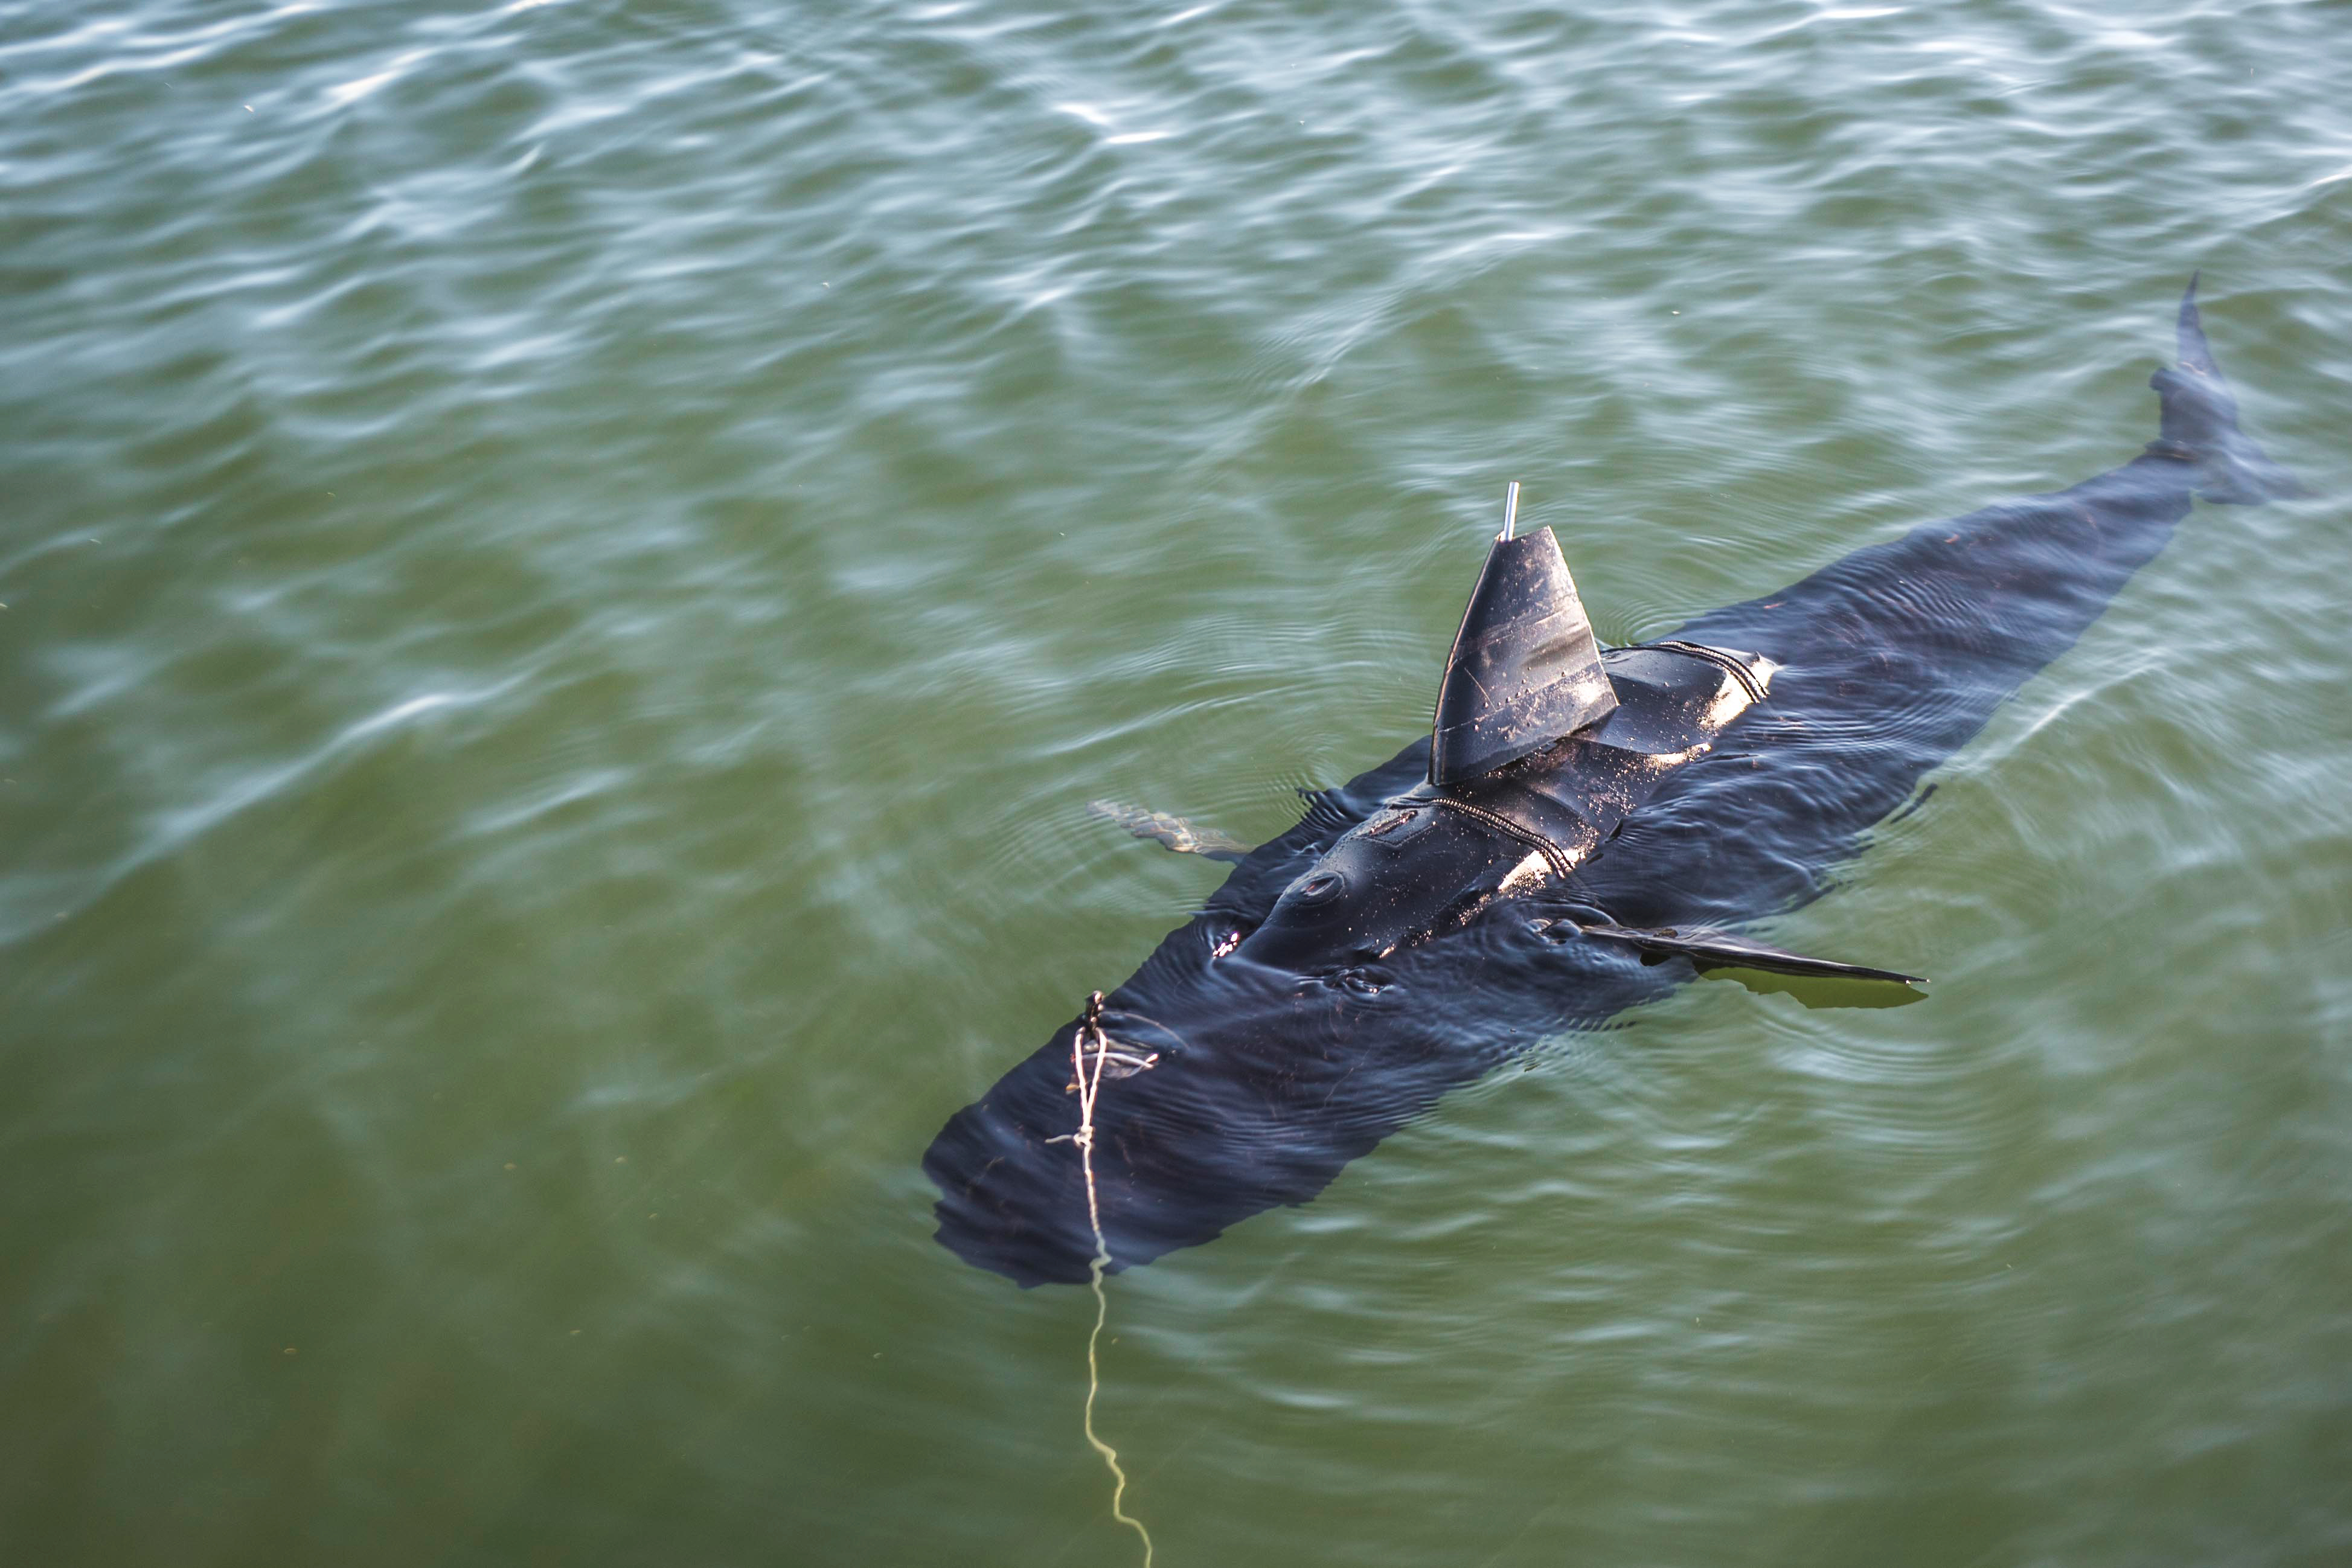 underwater-shark-robot-comes-to-help-us-navy